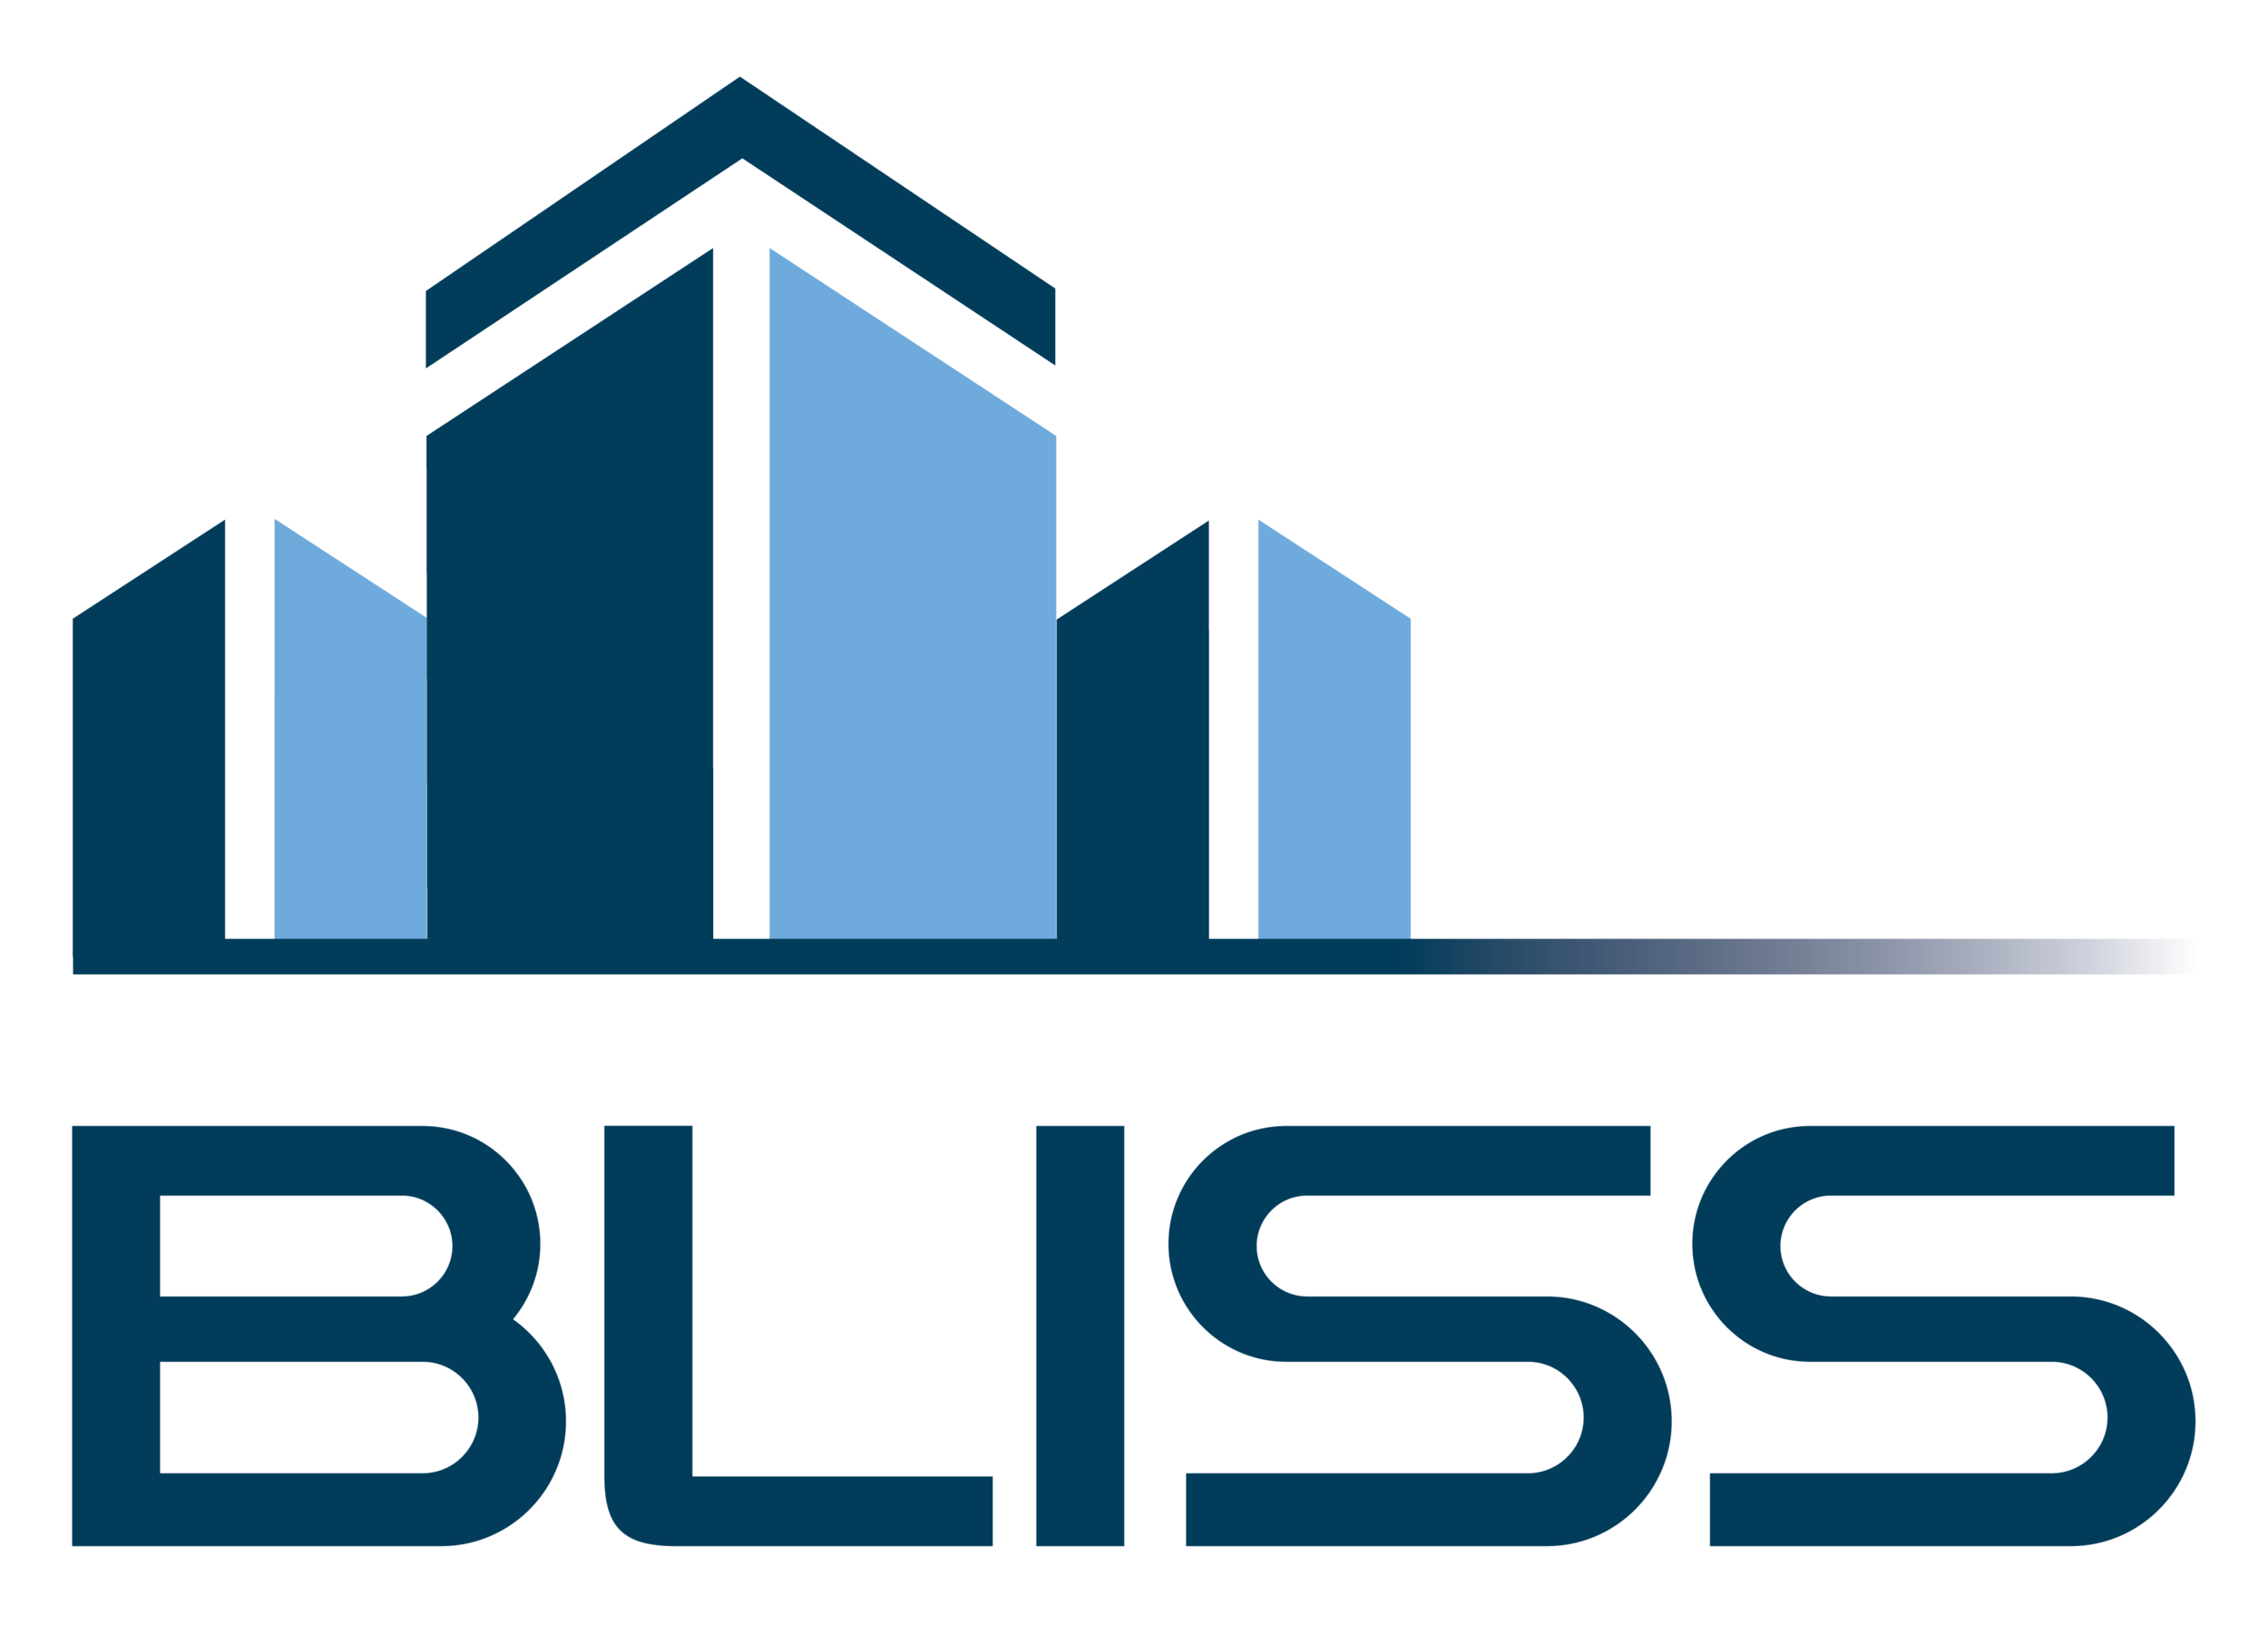 Bliss Associates